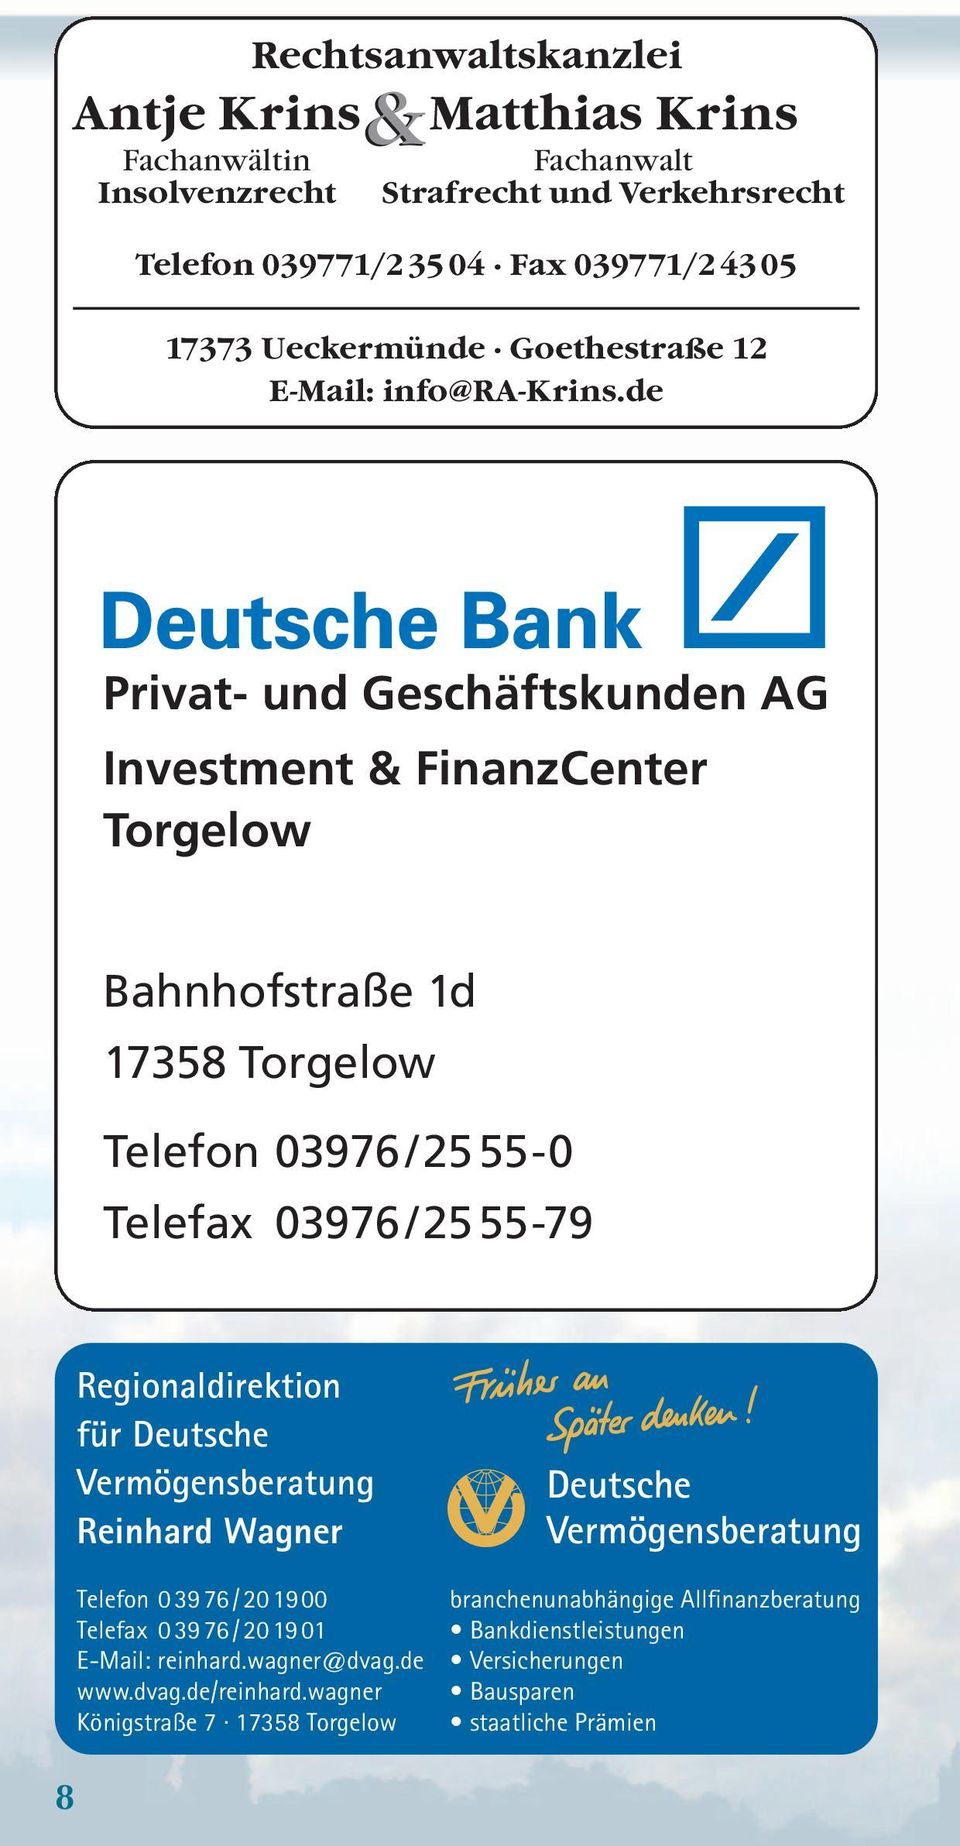 de Privat- und Geschäftskunden AG Investment & FinanzCenter Torgelow Bahnhofstraße 1d 17358 Torgelow Telefon 03976/25 55-0 Telefax 03976/25 55-79 Regionaldirektion für